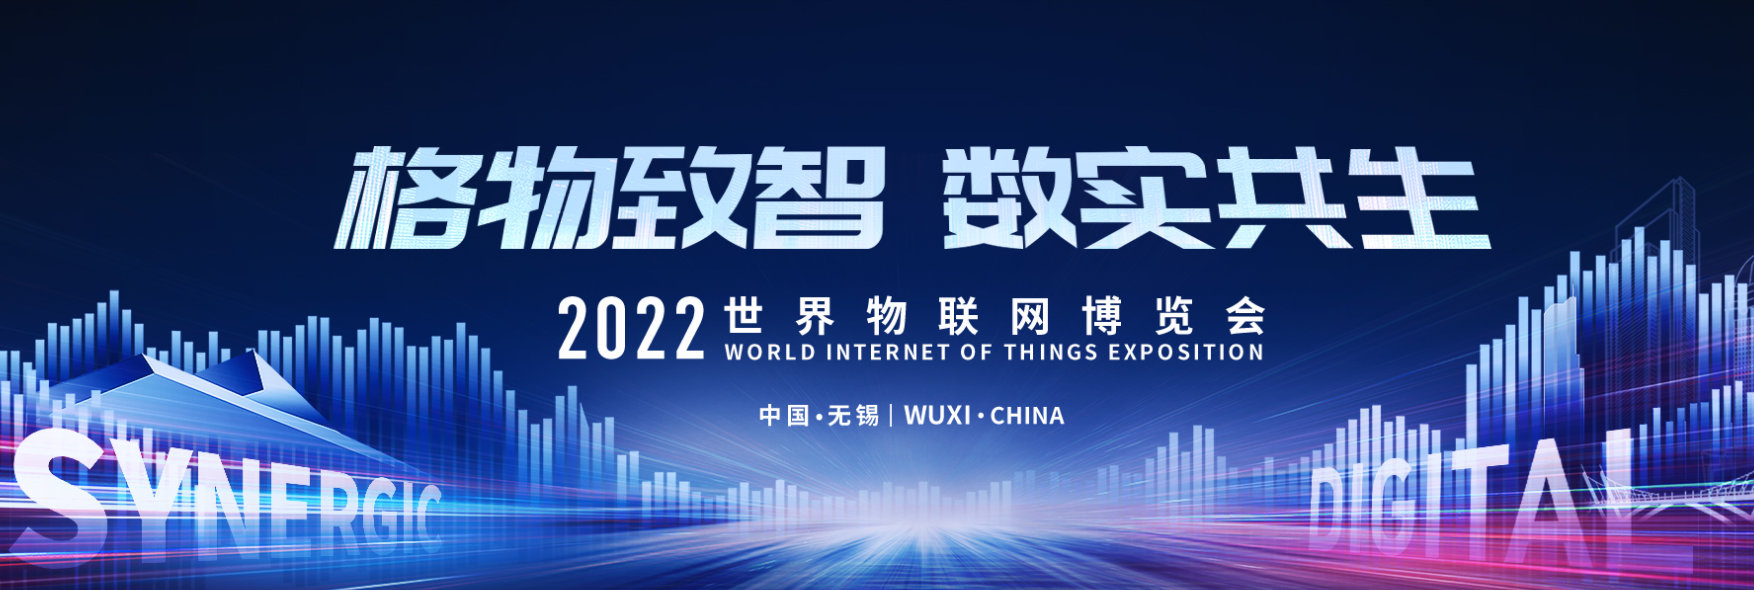 【展会邀请】2022世界物联网博览会即将开启！北微传感邀您共享行业盛会！